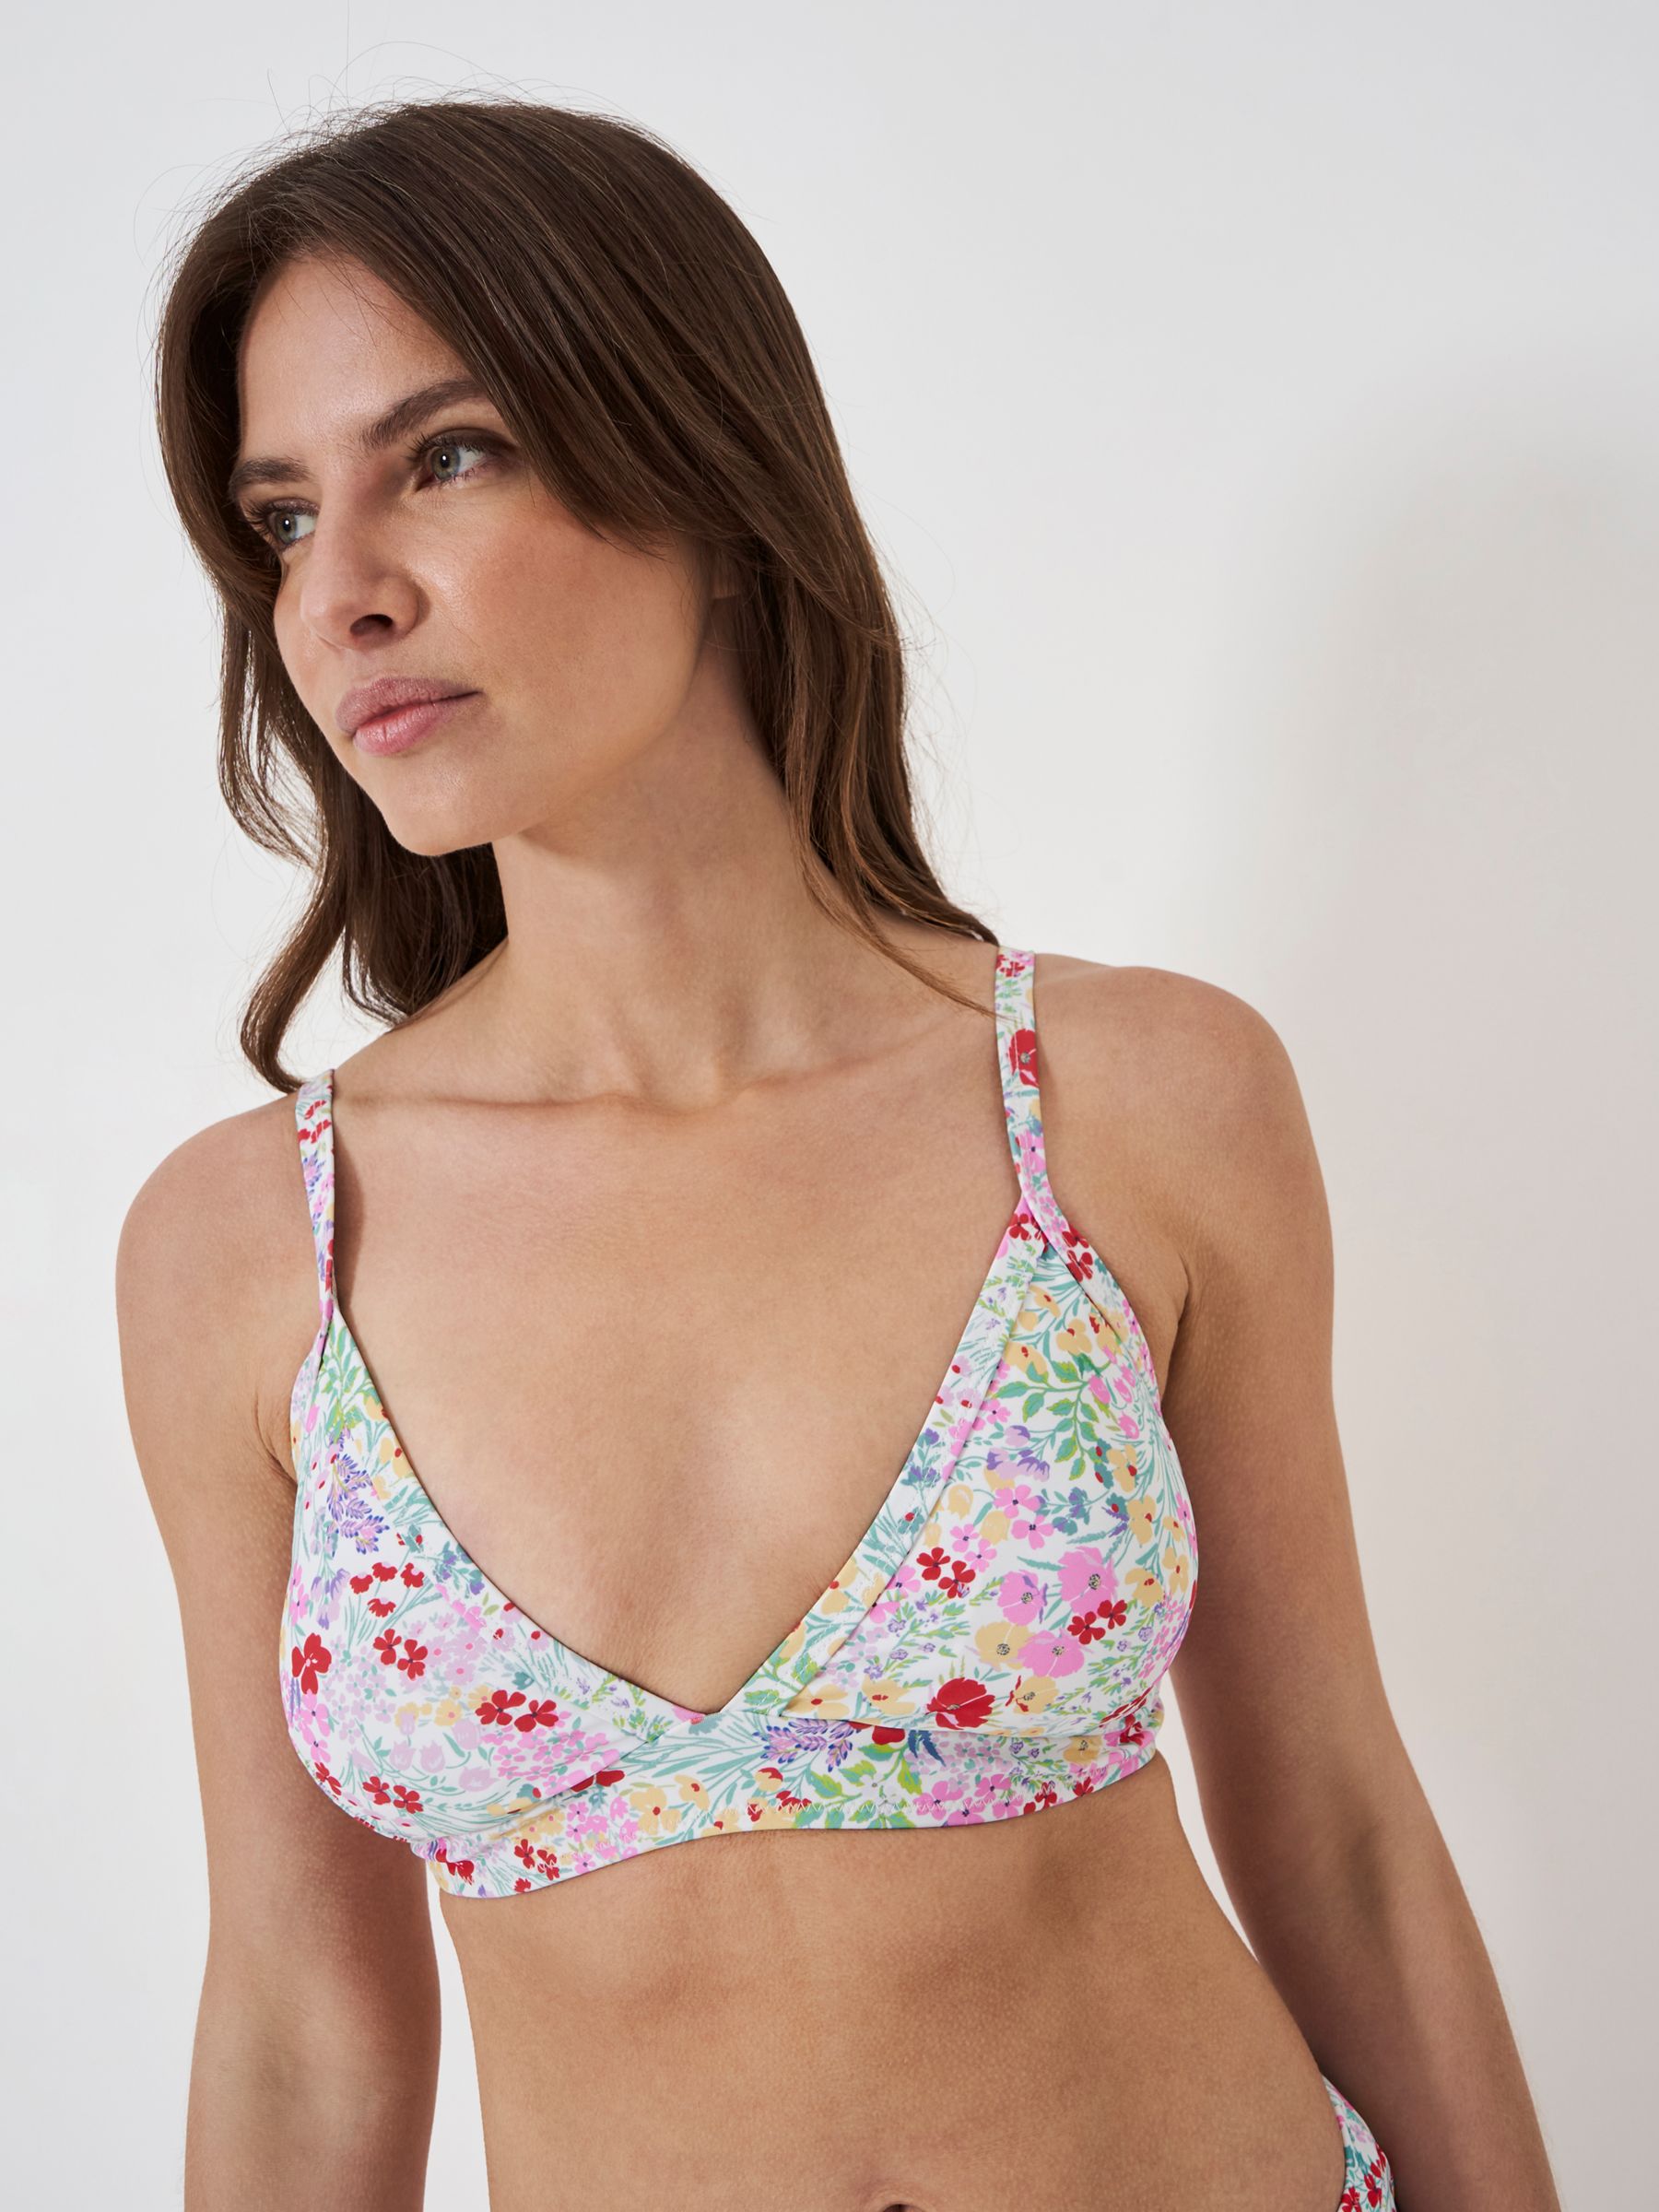 Crew Clothing Floral Print Triangle Bikini Top, Pink/Multi, 8